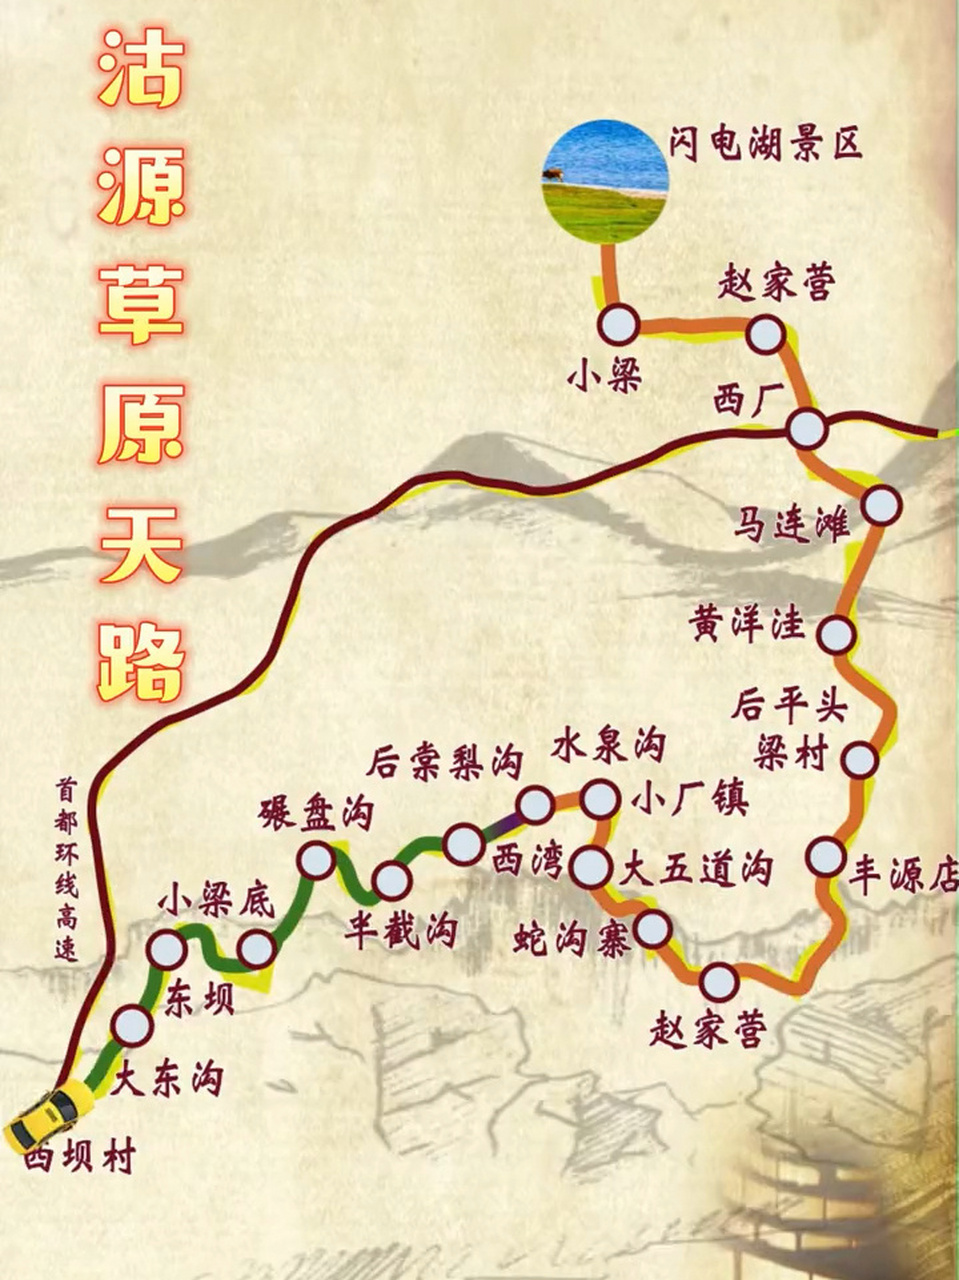 河北张家口沽源县地图图片